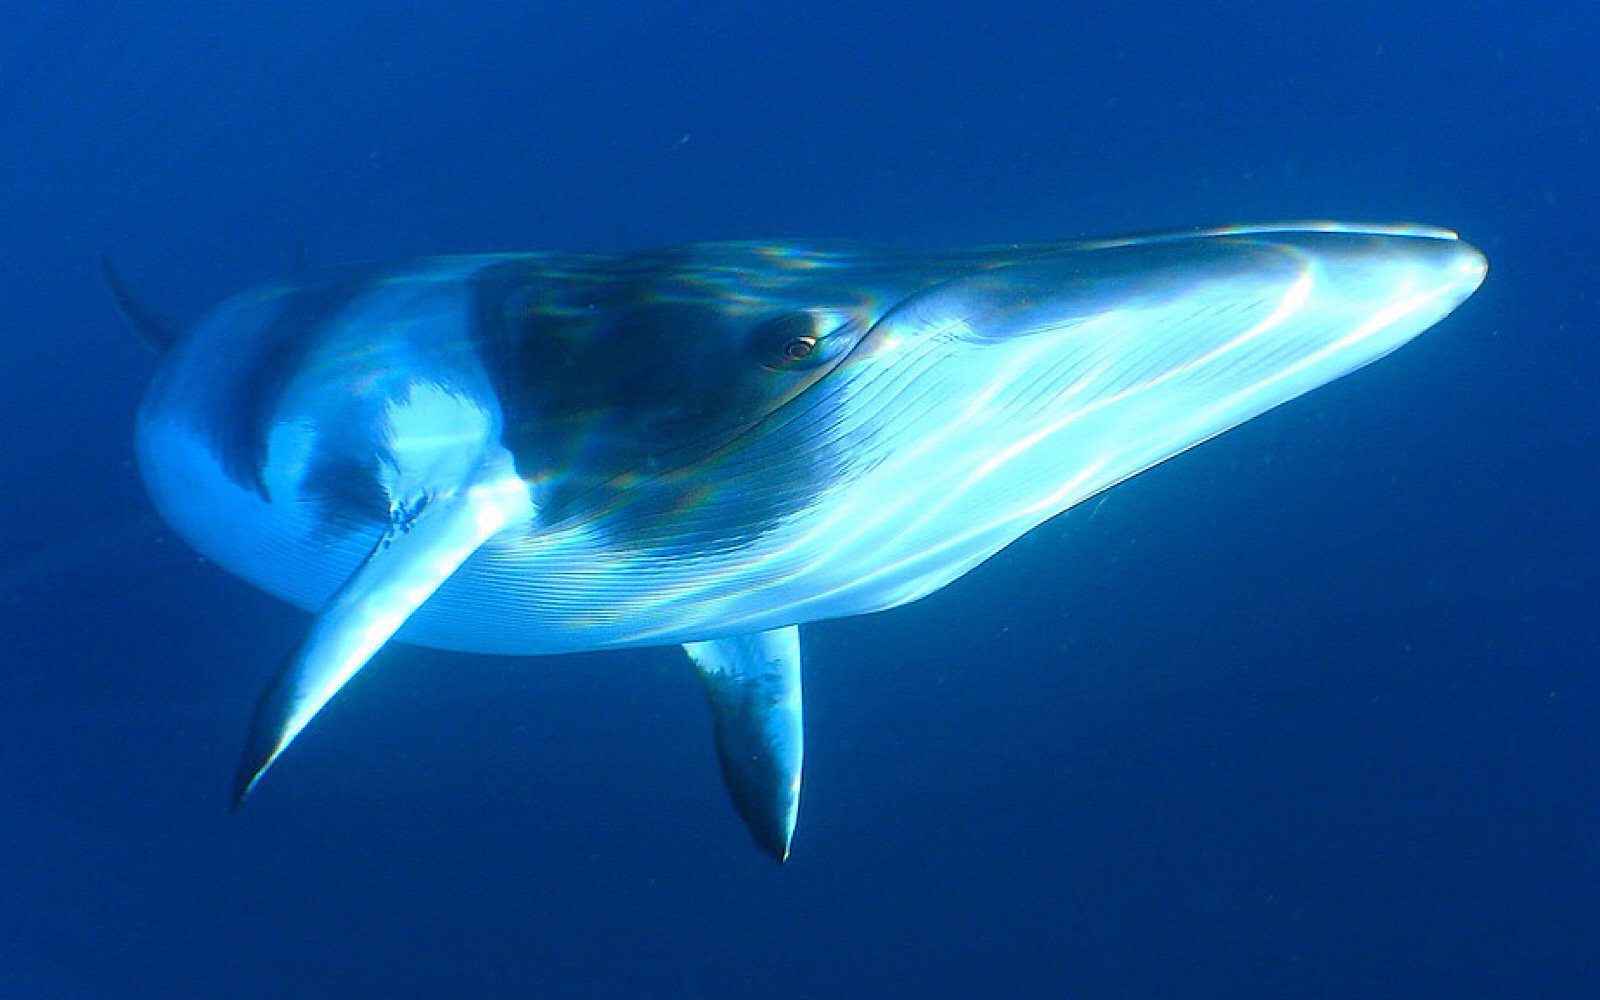 Japão já está de novo caçando baleias ilegalmente. Vamos fazer a ONU intervir e acabar com estes crimes globais!